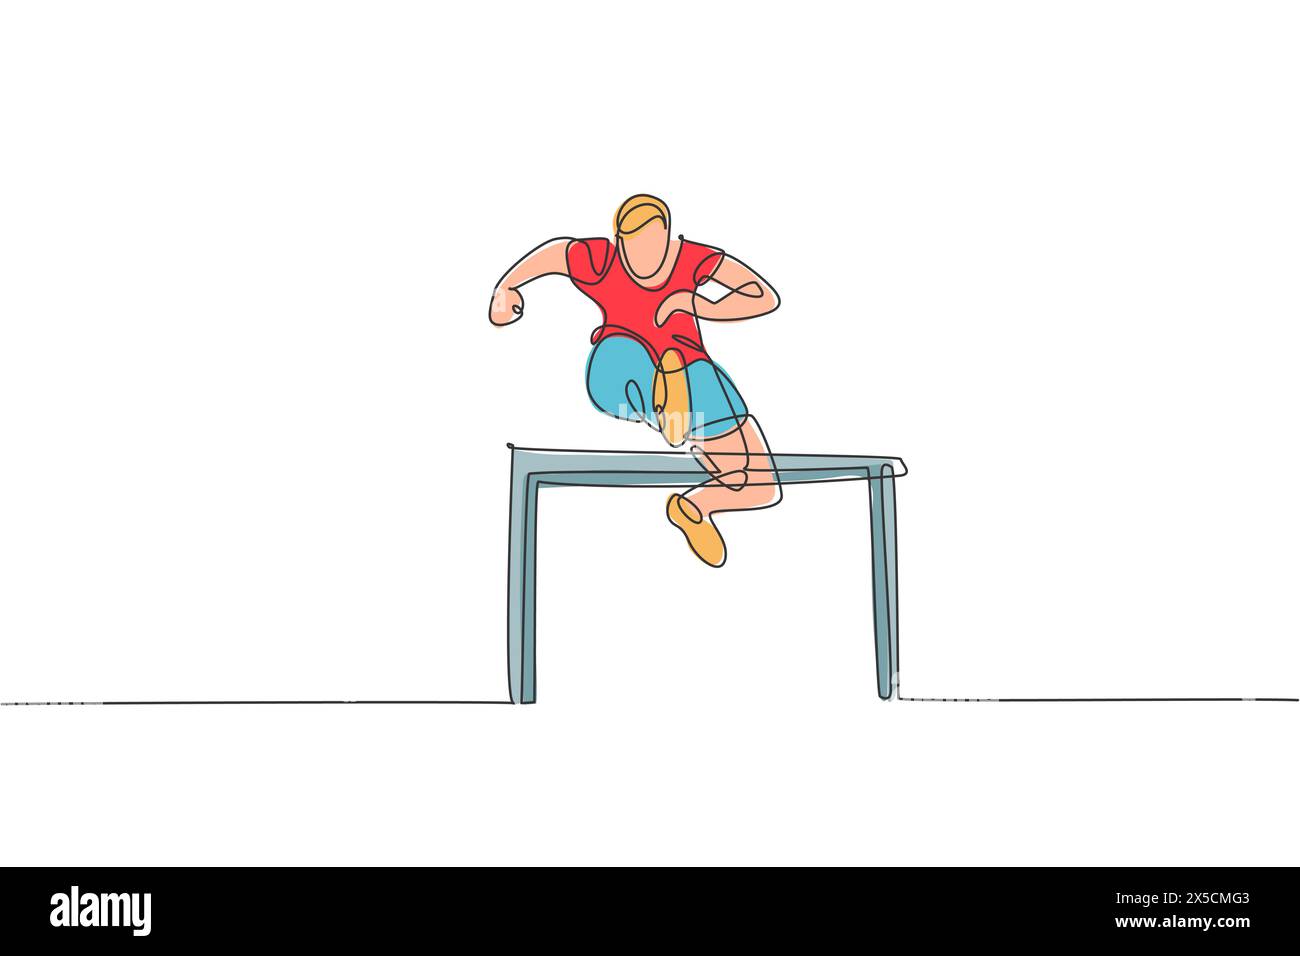 Un dessin en ligne continue de jeune homme sportif sautant obstacle à la piste de course. Concept de sport d'activité de santé. Desi. De dessin d'une seule ligne dynamique Illustration de Vecteur